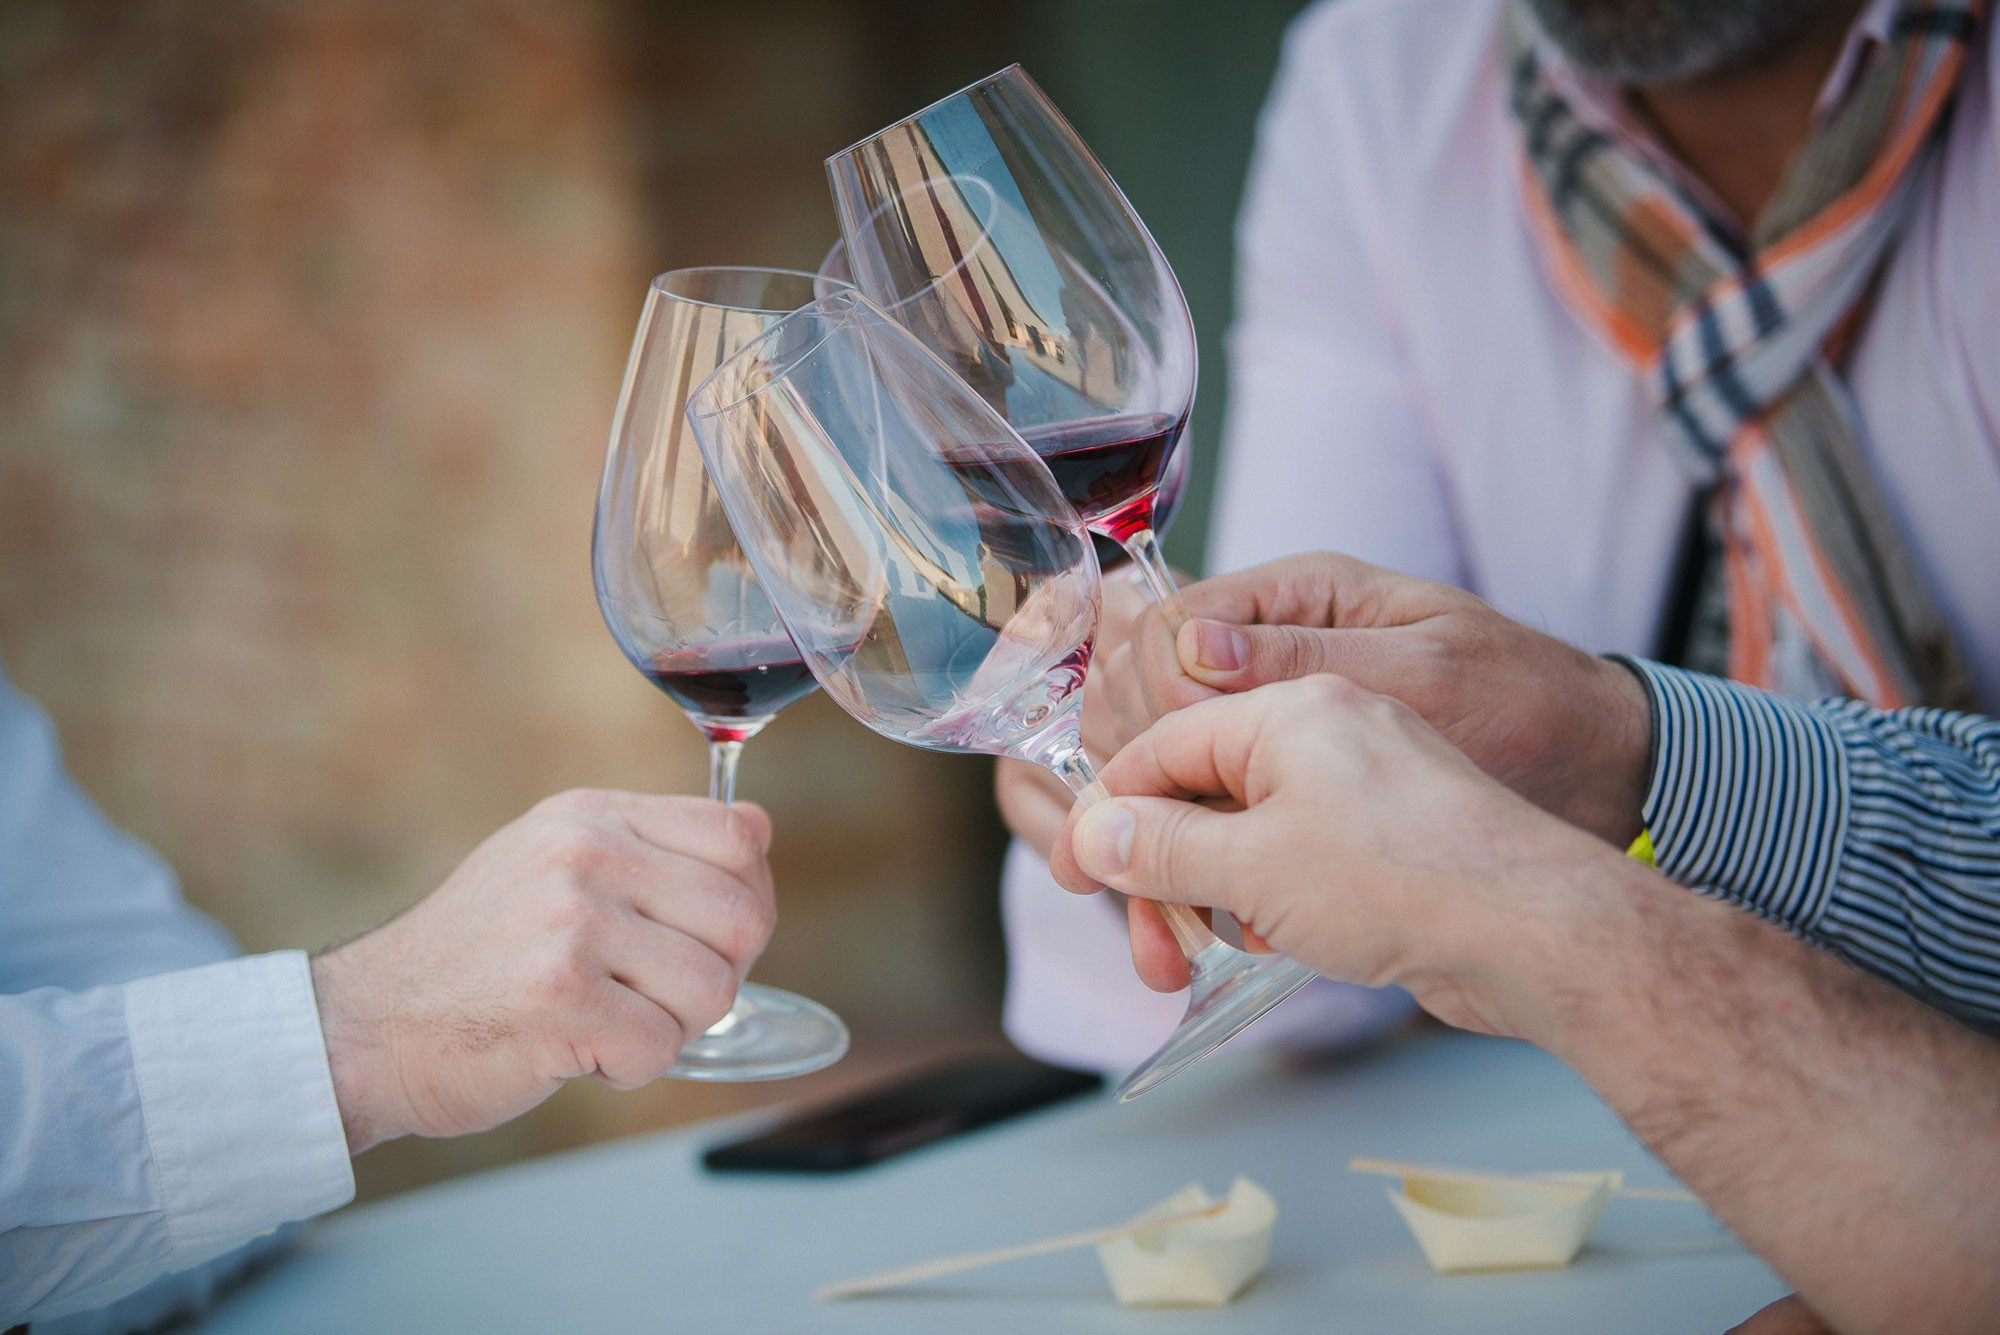 vinoase de degustare a vinului dating evenimente